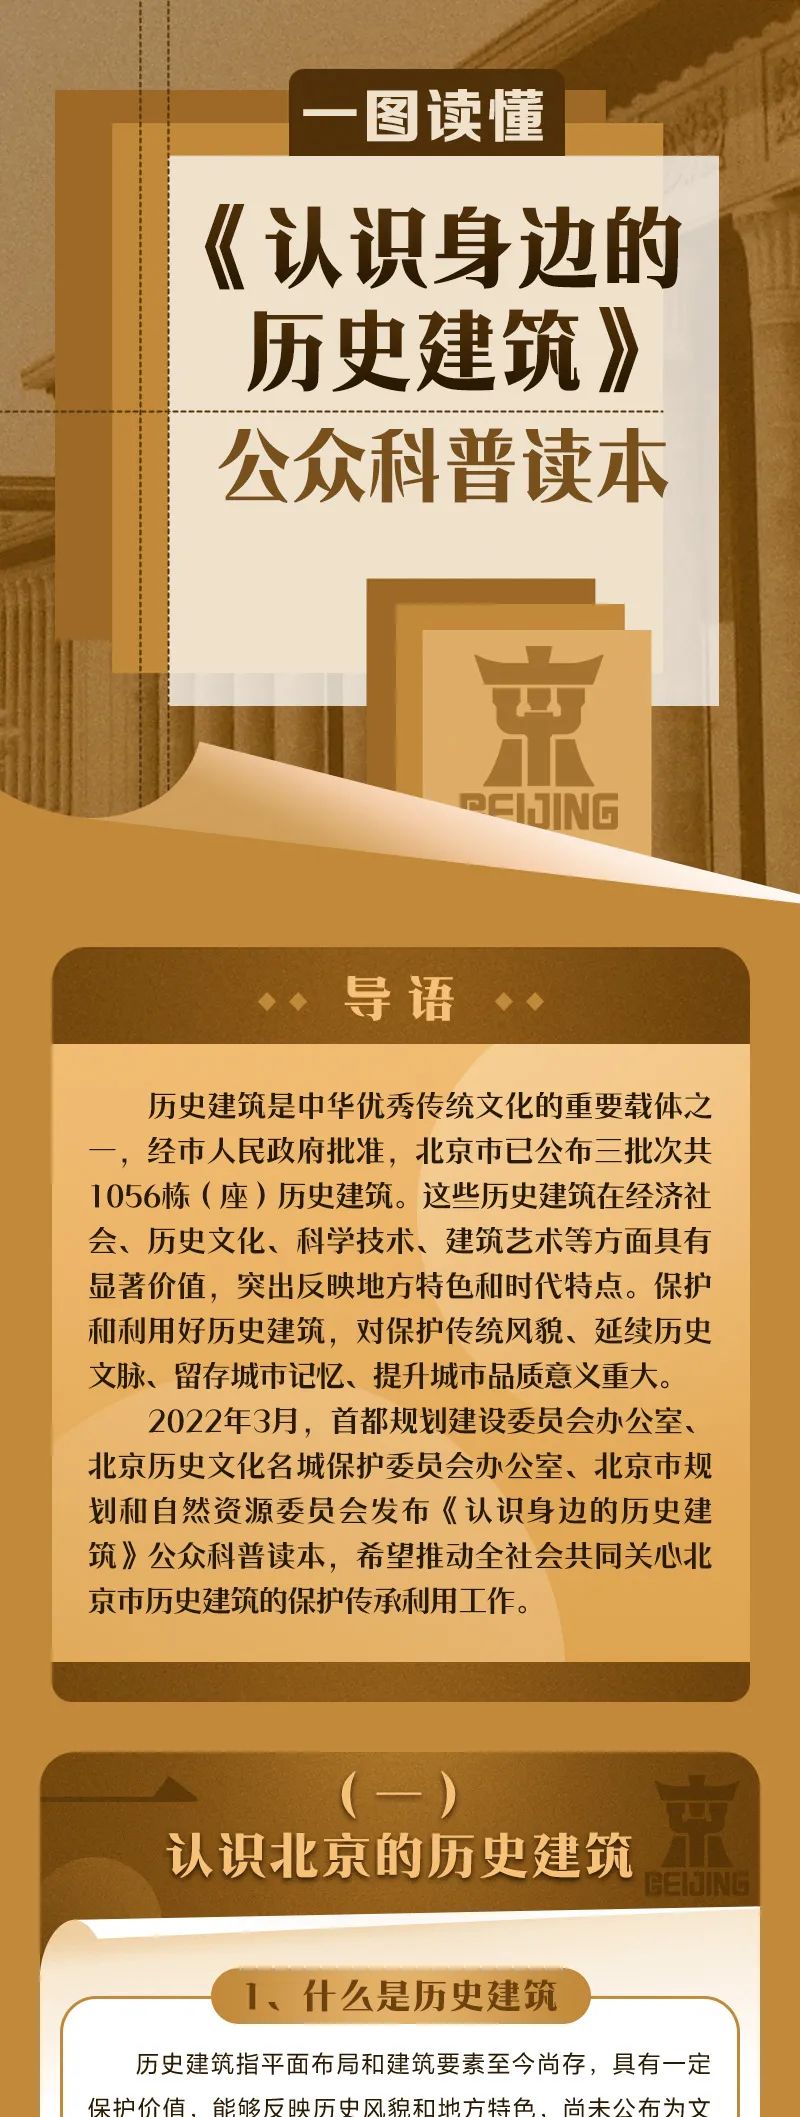 一图读懂北京市历史建筑